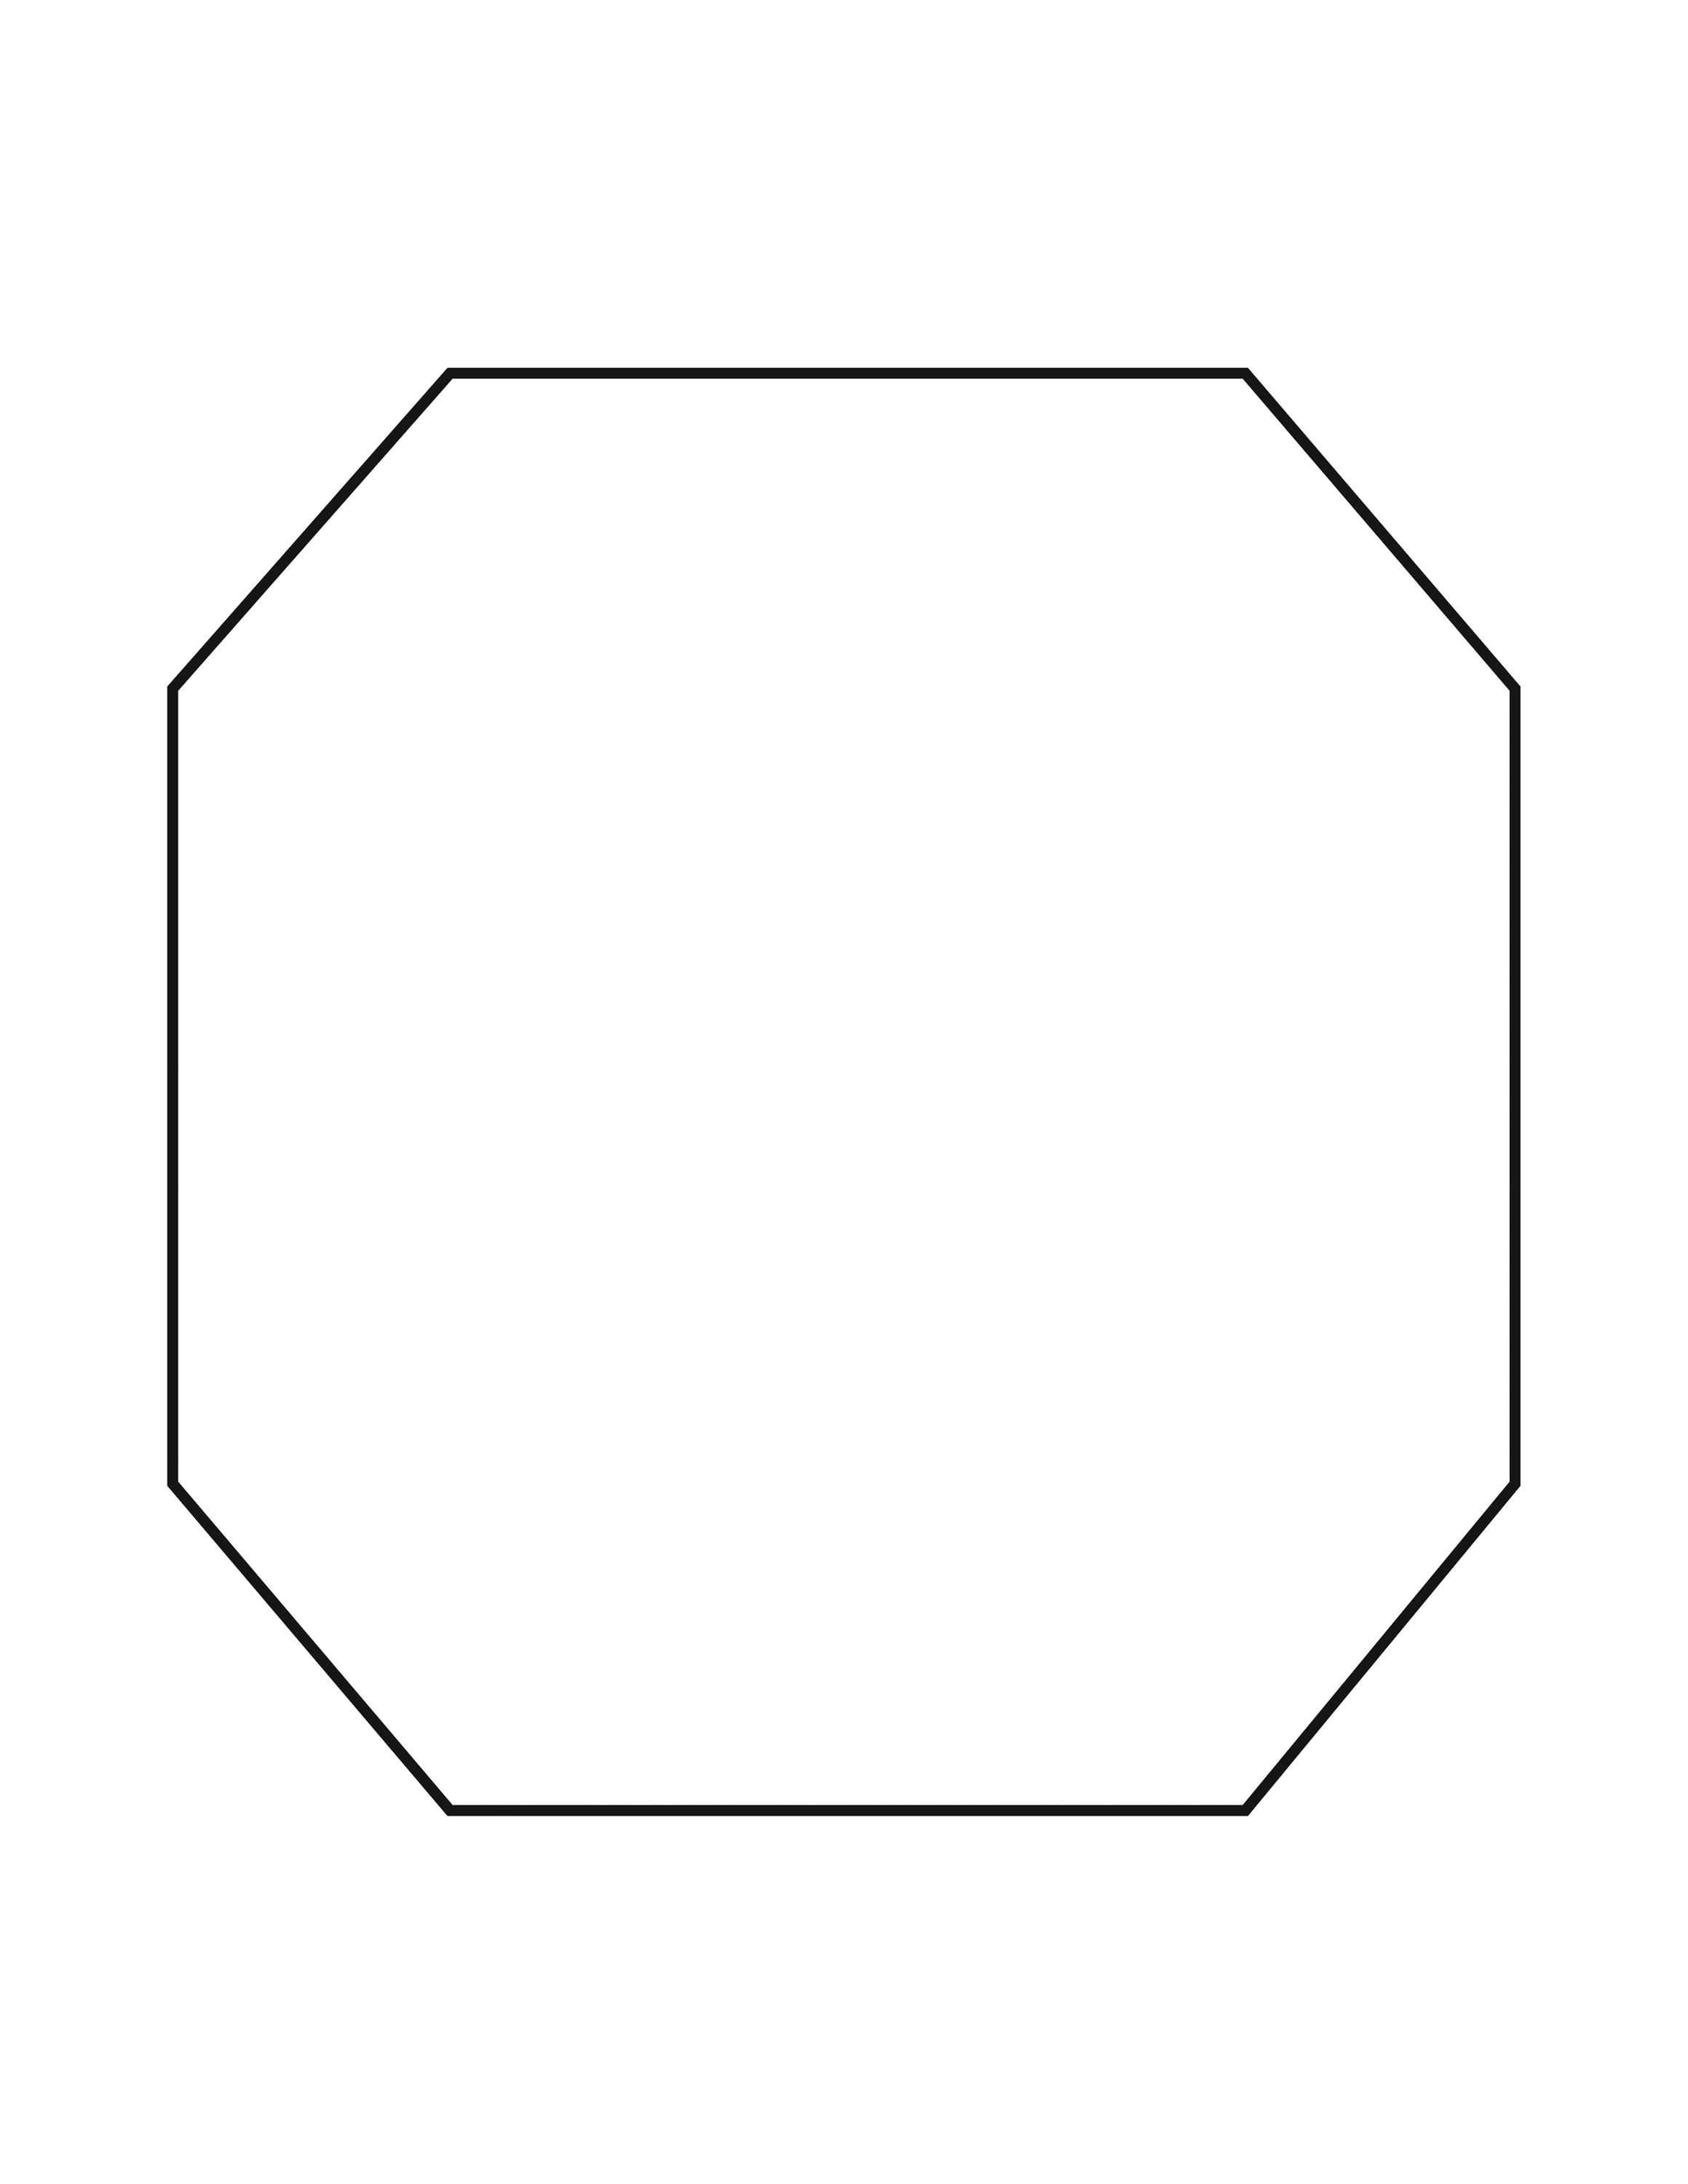 Семиугольник из бумаги. Октагон декагон. Правильный восьмиугольник октагон. Октагон фигура. Правильный 8 угольник.